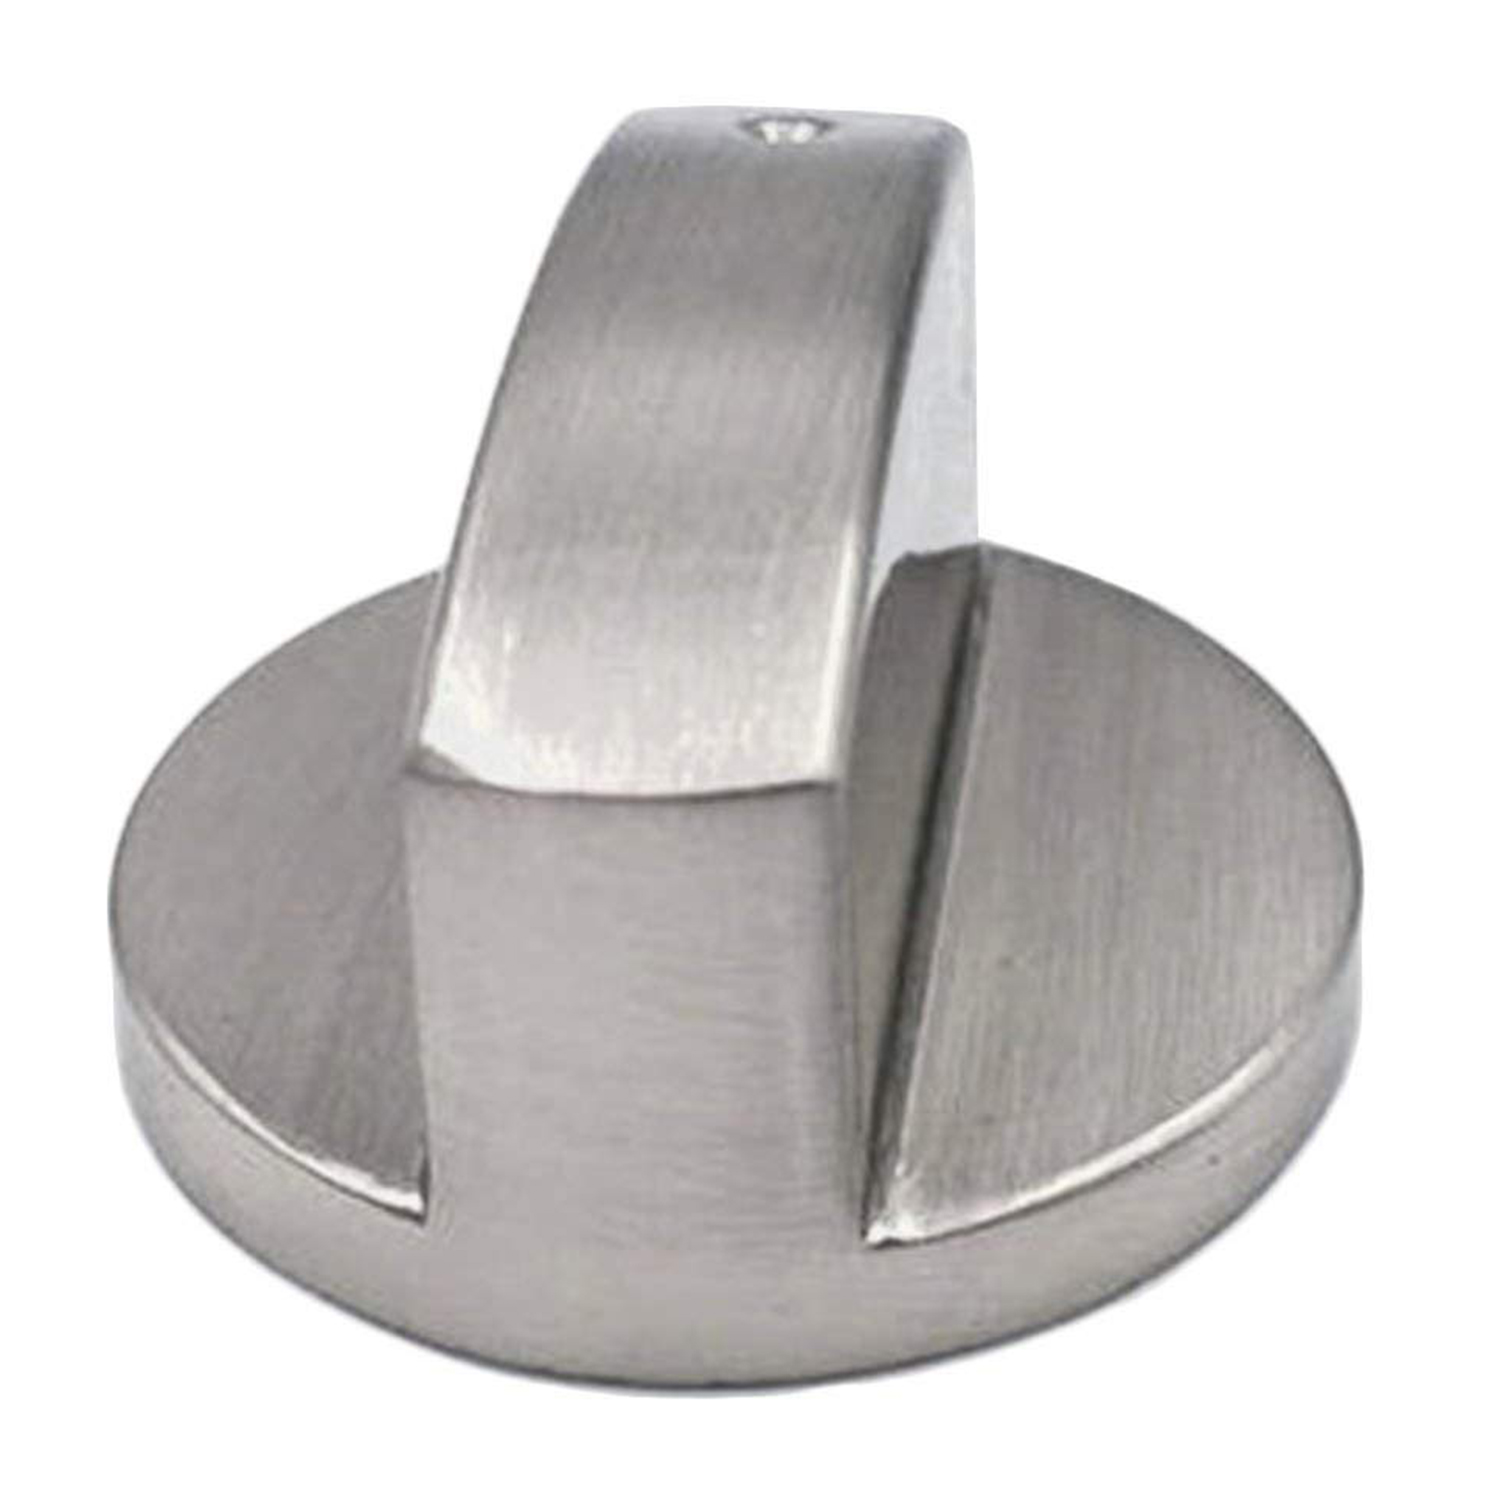 Komfurer komfur, ovnknap (4 stk ),6mm universal sølv gaskomfur kontrolknapper adaptere ovn drejekontakt madlavningsoverflade c